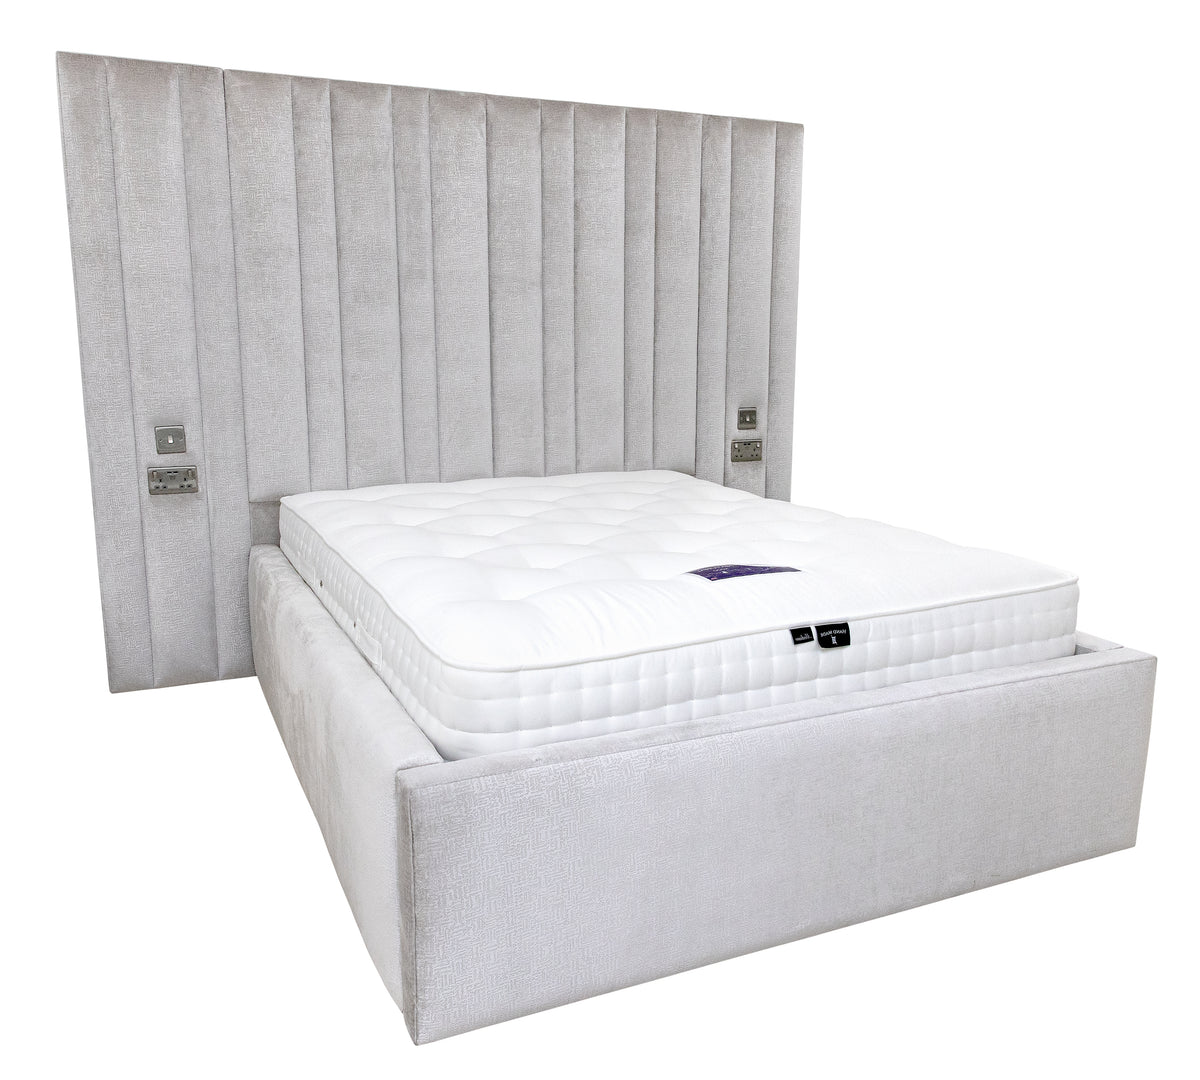 Elegance Upholstered Bed Frame